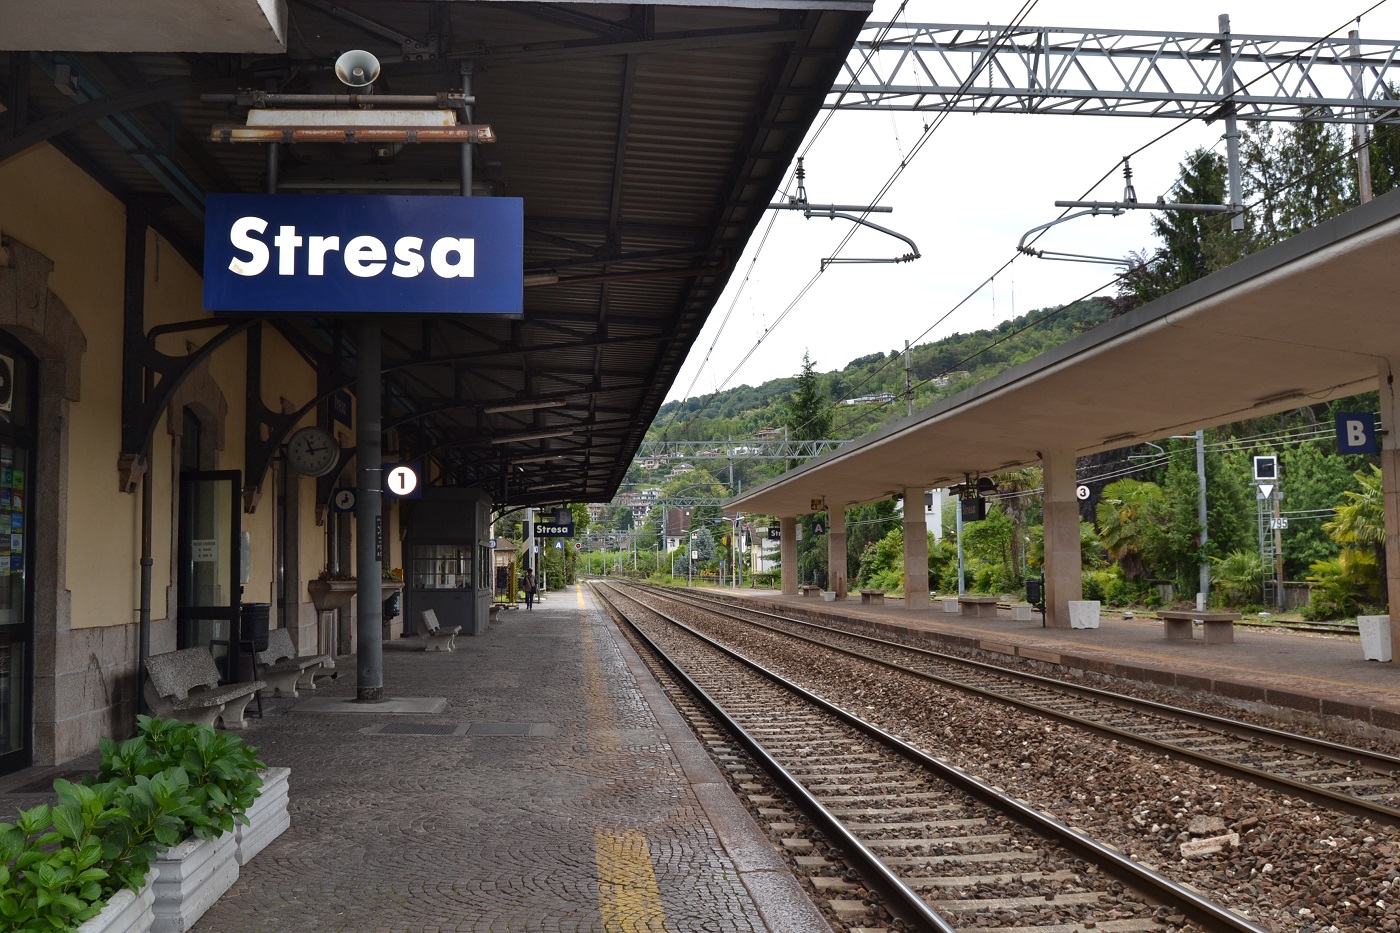 Unterwegs in Italien mit der Bahn Was ist wichtig? Worauf